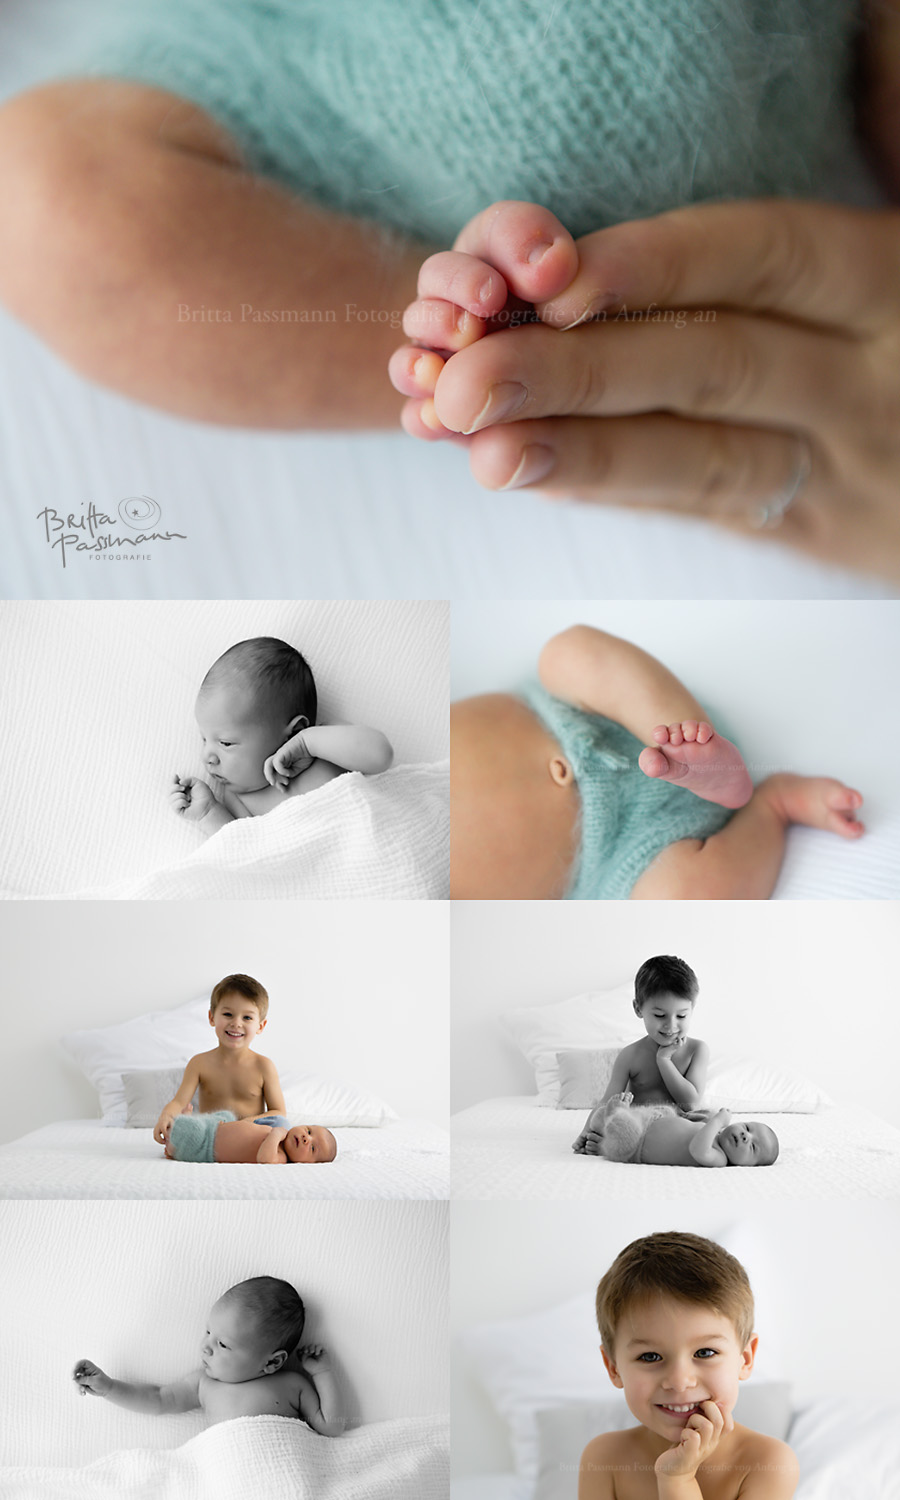 authentische-Neugeborenenfotos-Geschwisterfotos-Dortmund-Bochum-NRW-Neuegborenenshooting-Fotostudio-Fotograf